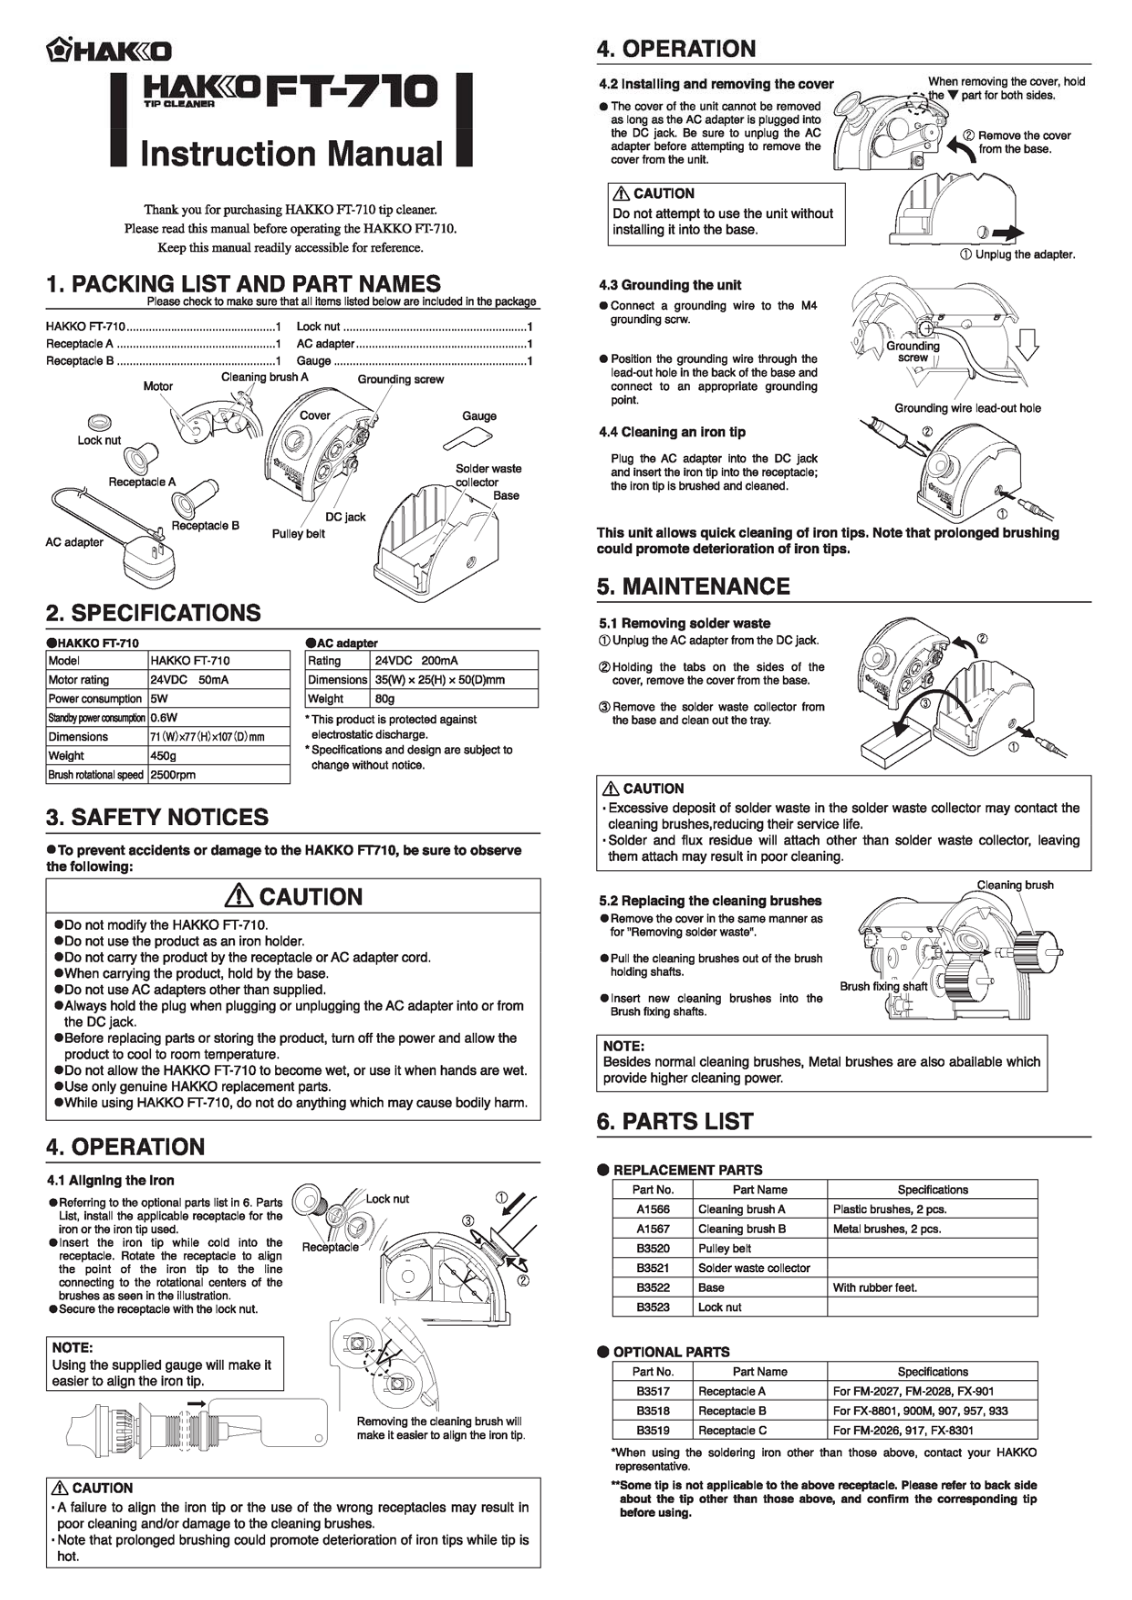 Hakko FT-710 User Manual